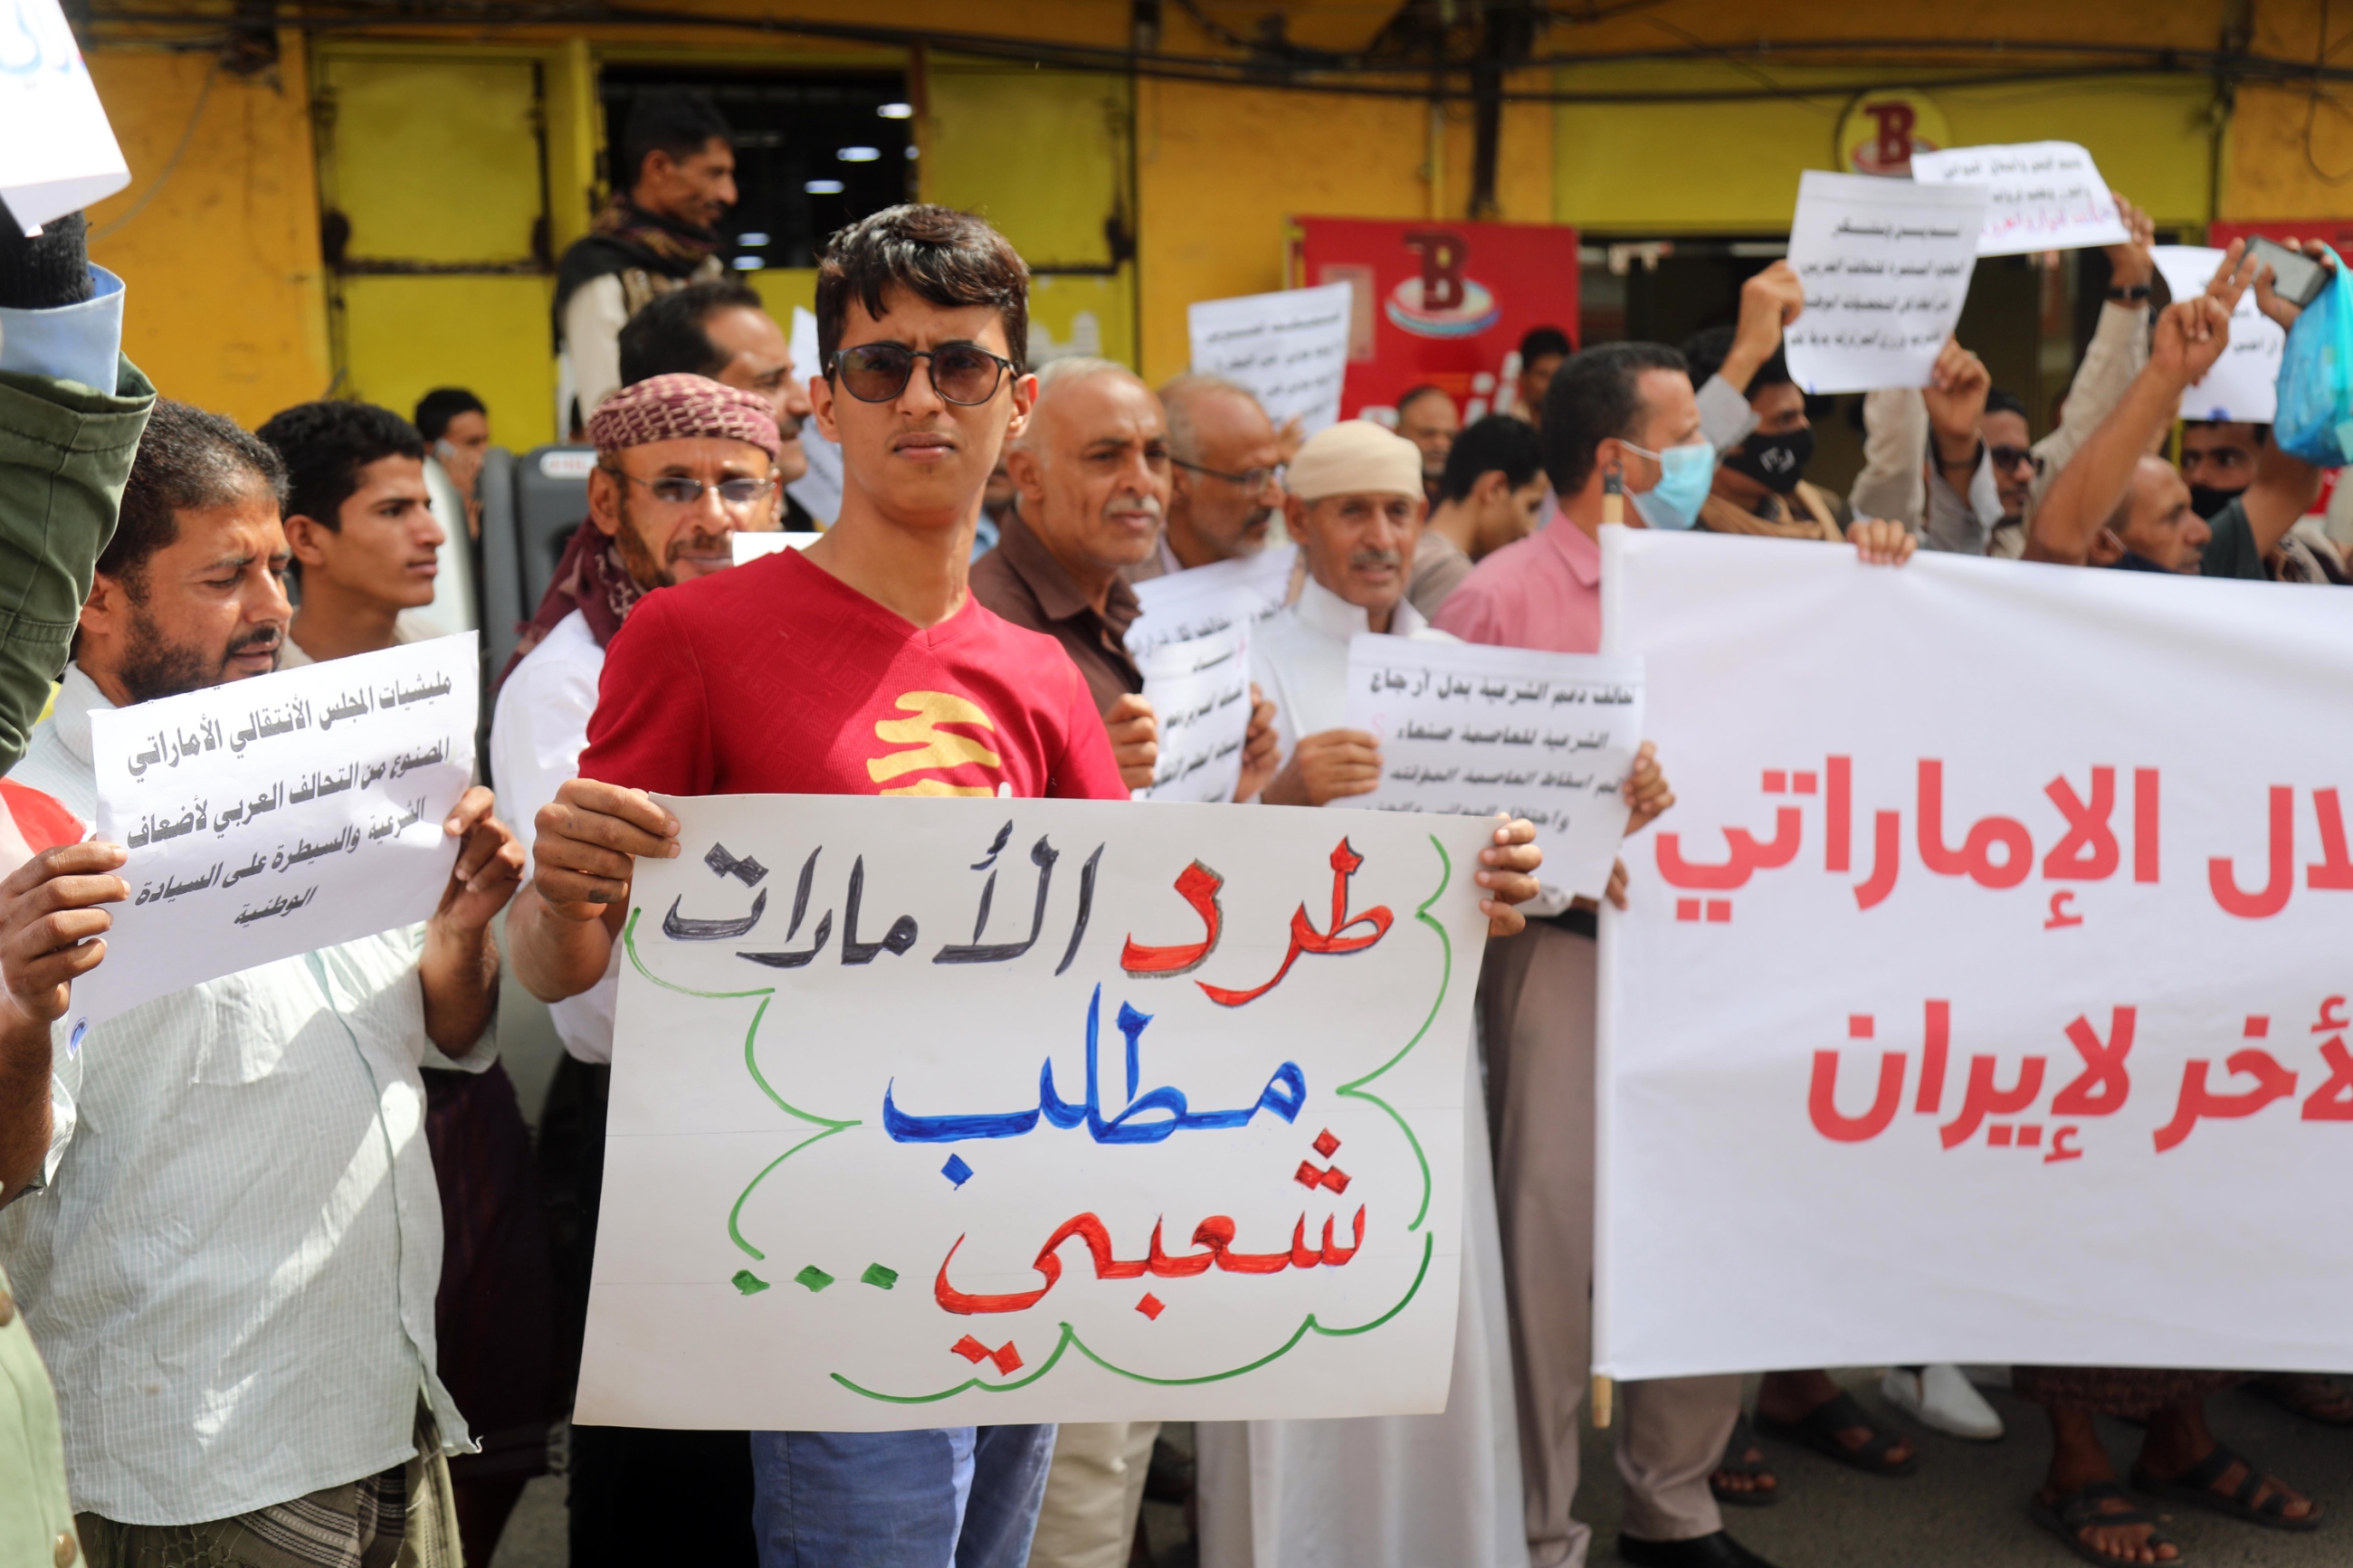 Un manifestant yéménite tient une pancarte en arabe « L’expulsion des Émirats est une revendication nationale », lors d’une manifestation contre les Émirats arabes unis, à Taez, le 24 juin 2020 (AFP)